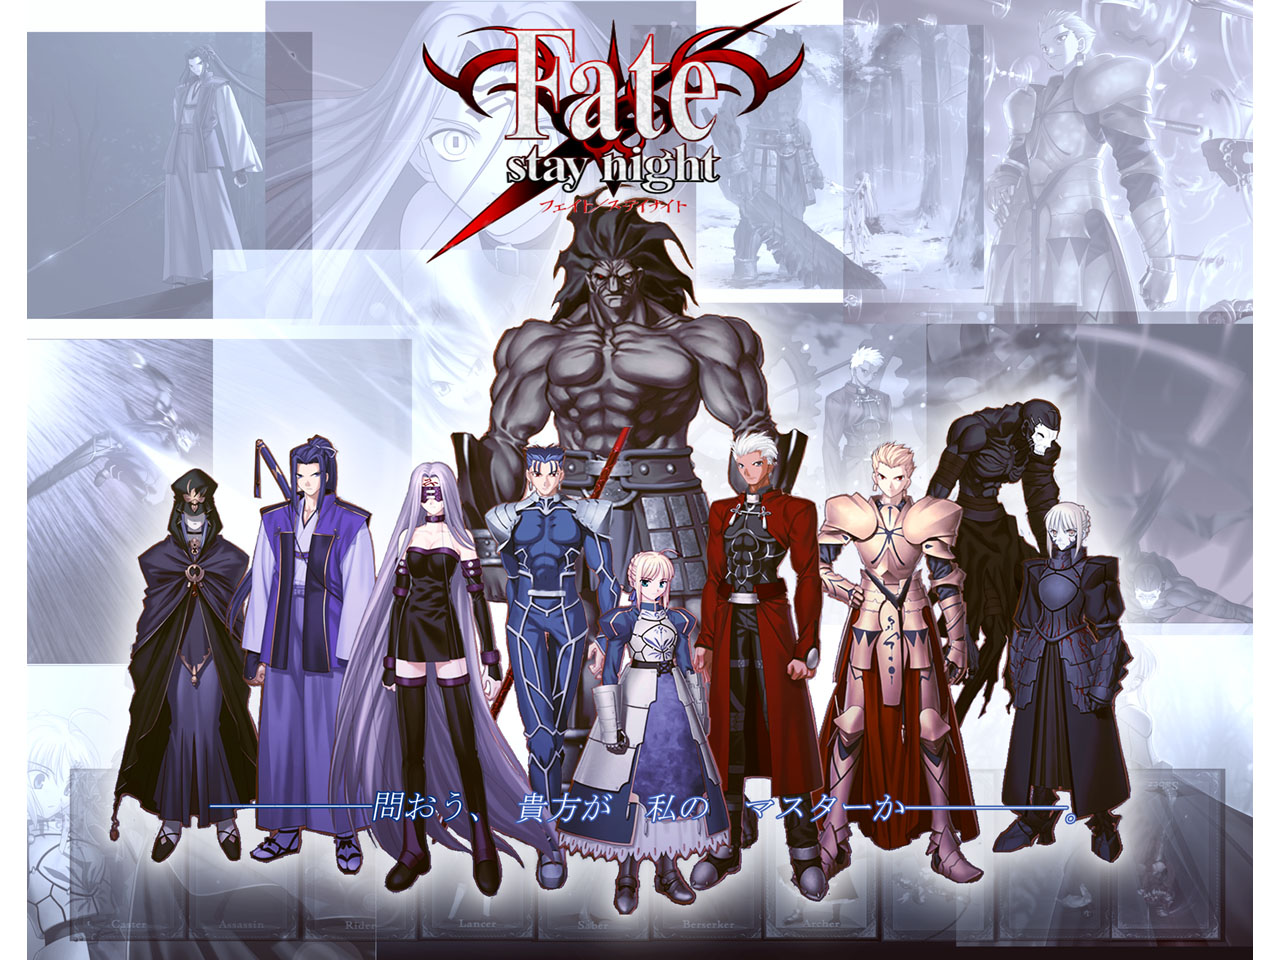 Fate/Stay Night, uma história sobre Servos, magos, e destino